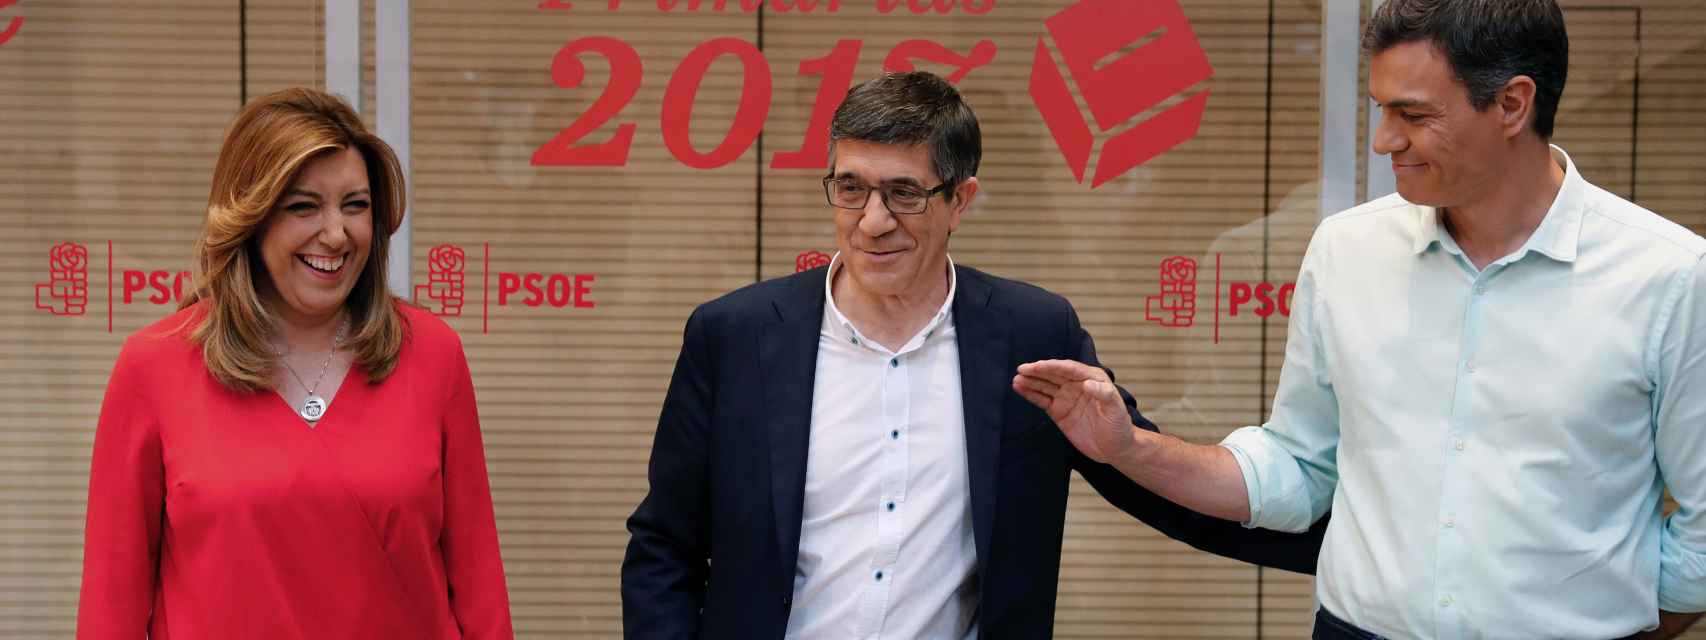 Los aspirantes a liderar el PSOE